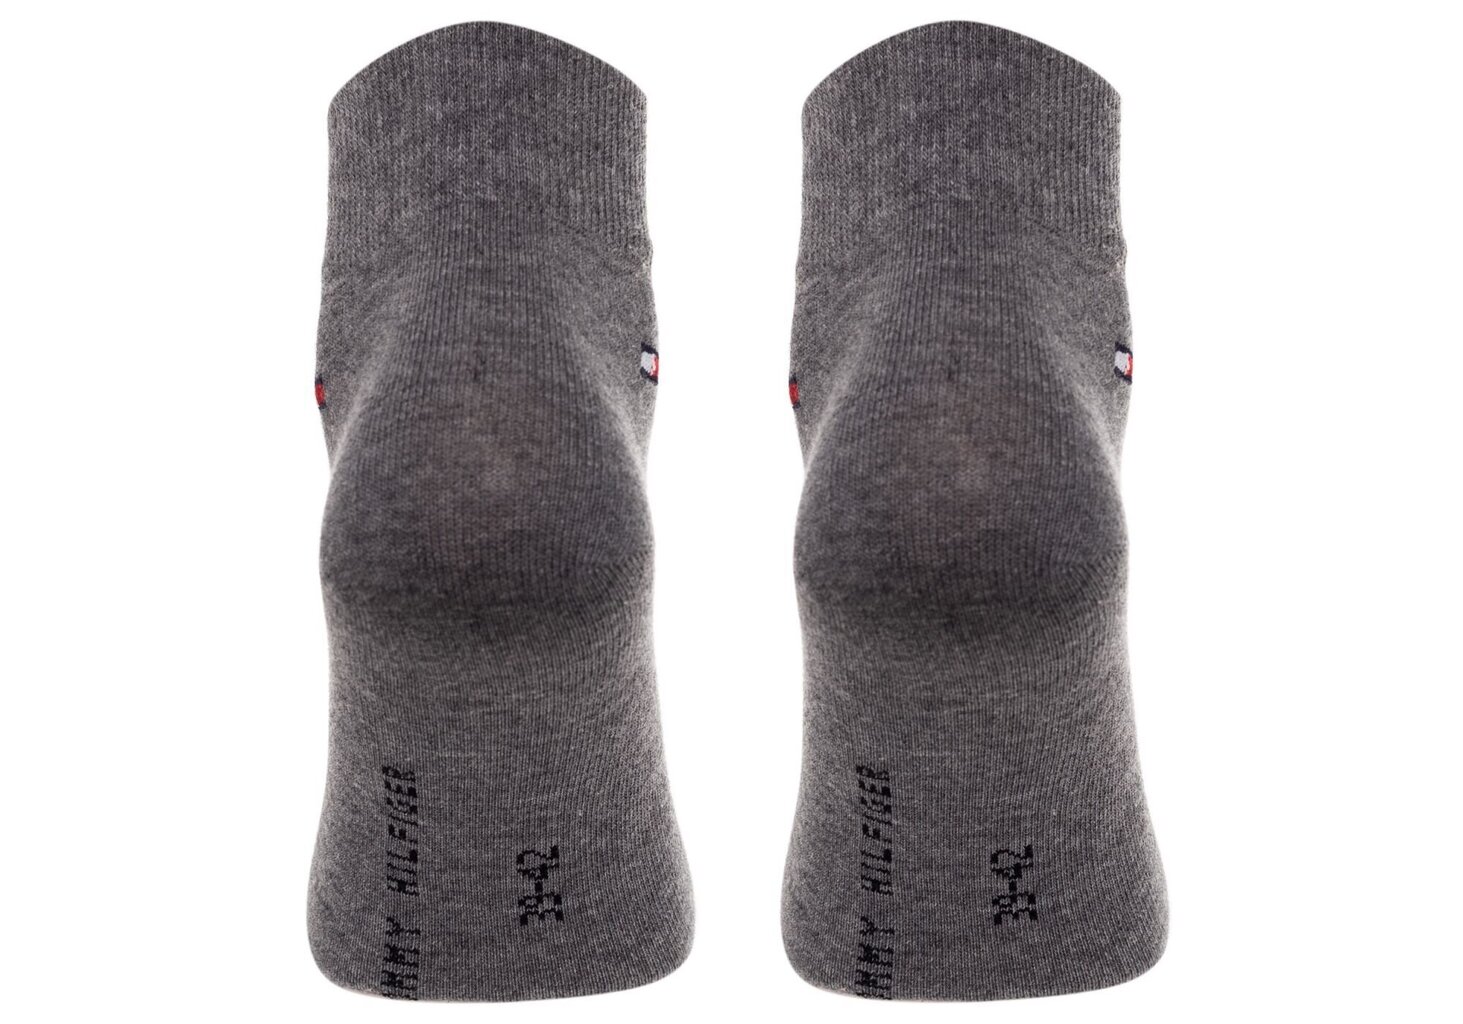 Vyriškos kojinės TOMMY HILFIGER, 2 pora, baltos/pilkos spalvos, 40962 kaina ir informacija | Vyriškos kojinės | pigu.lt